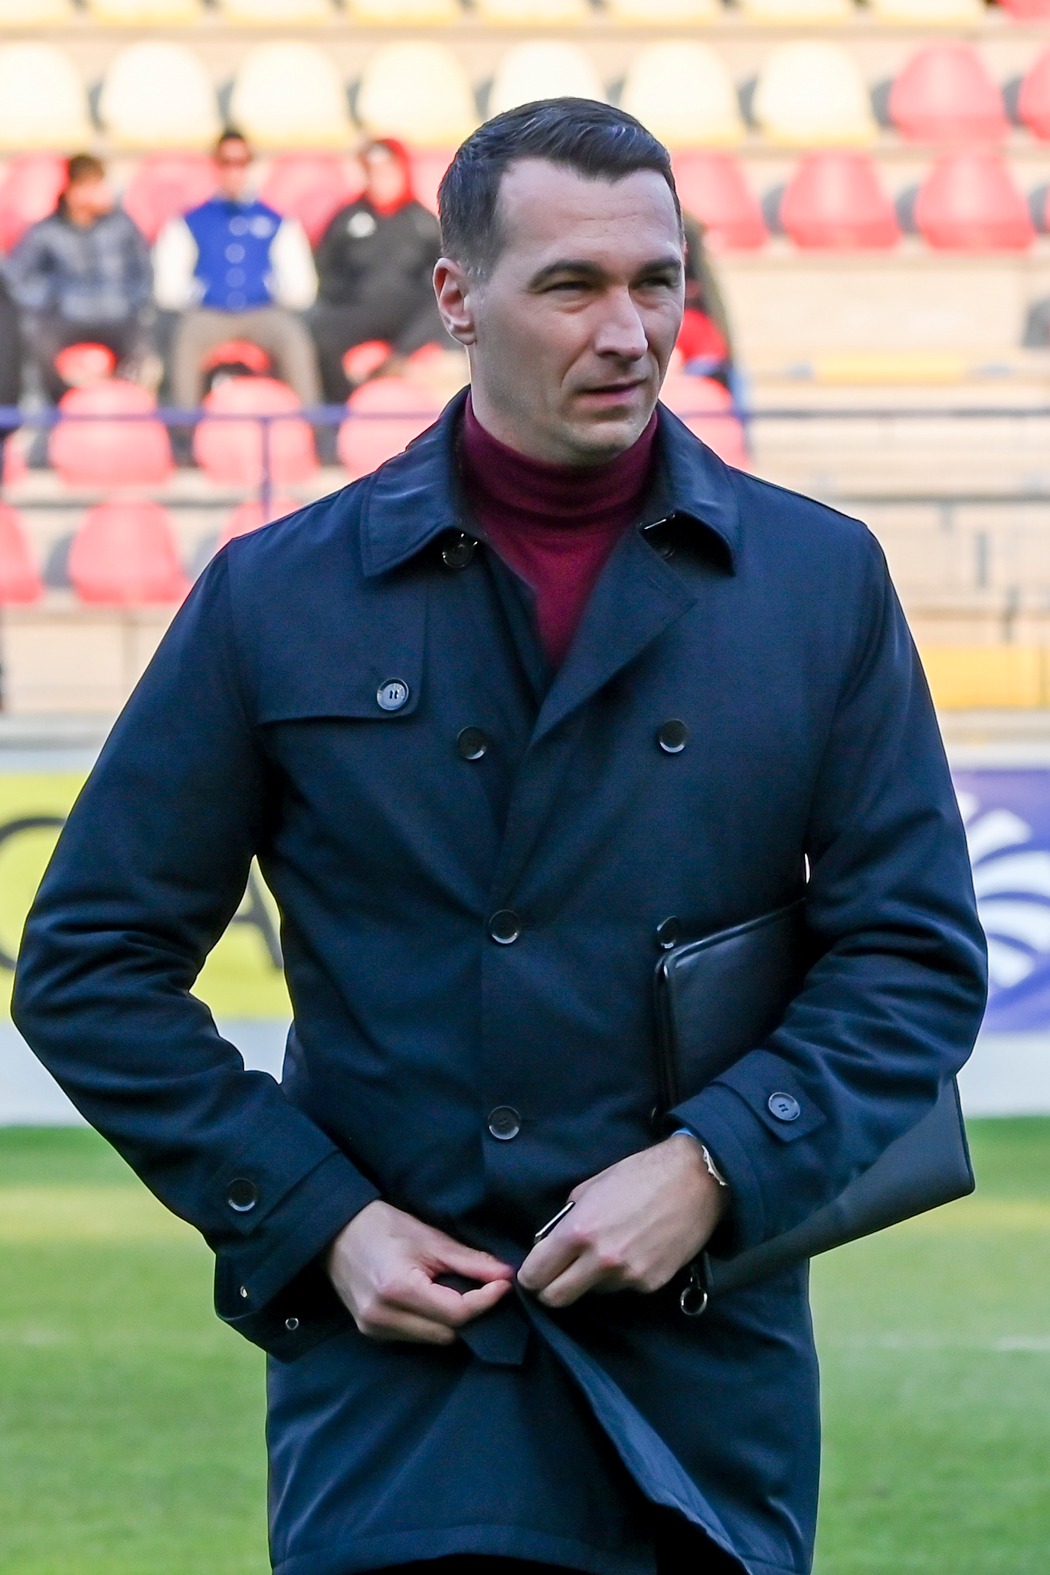 Peter Struhár